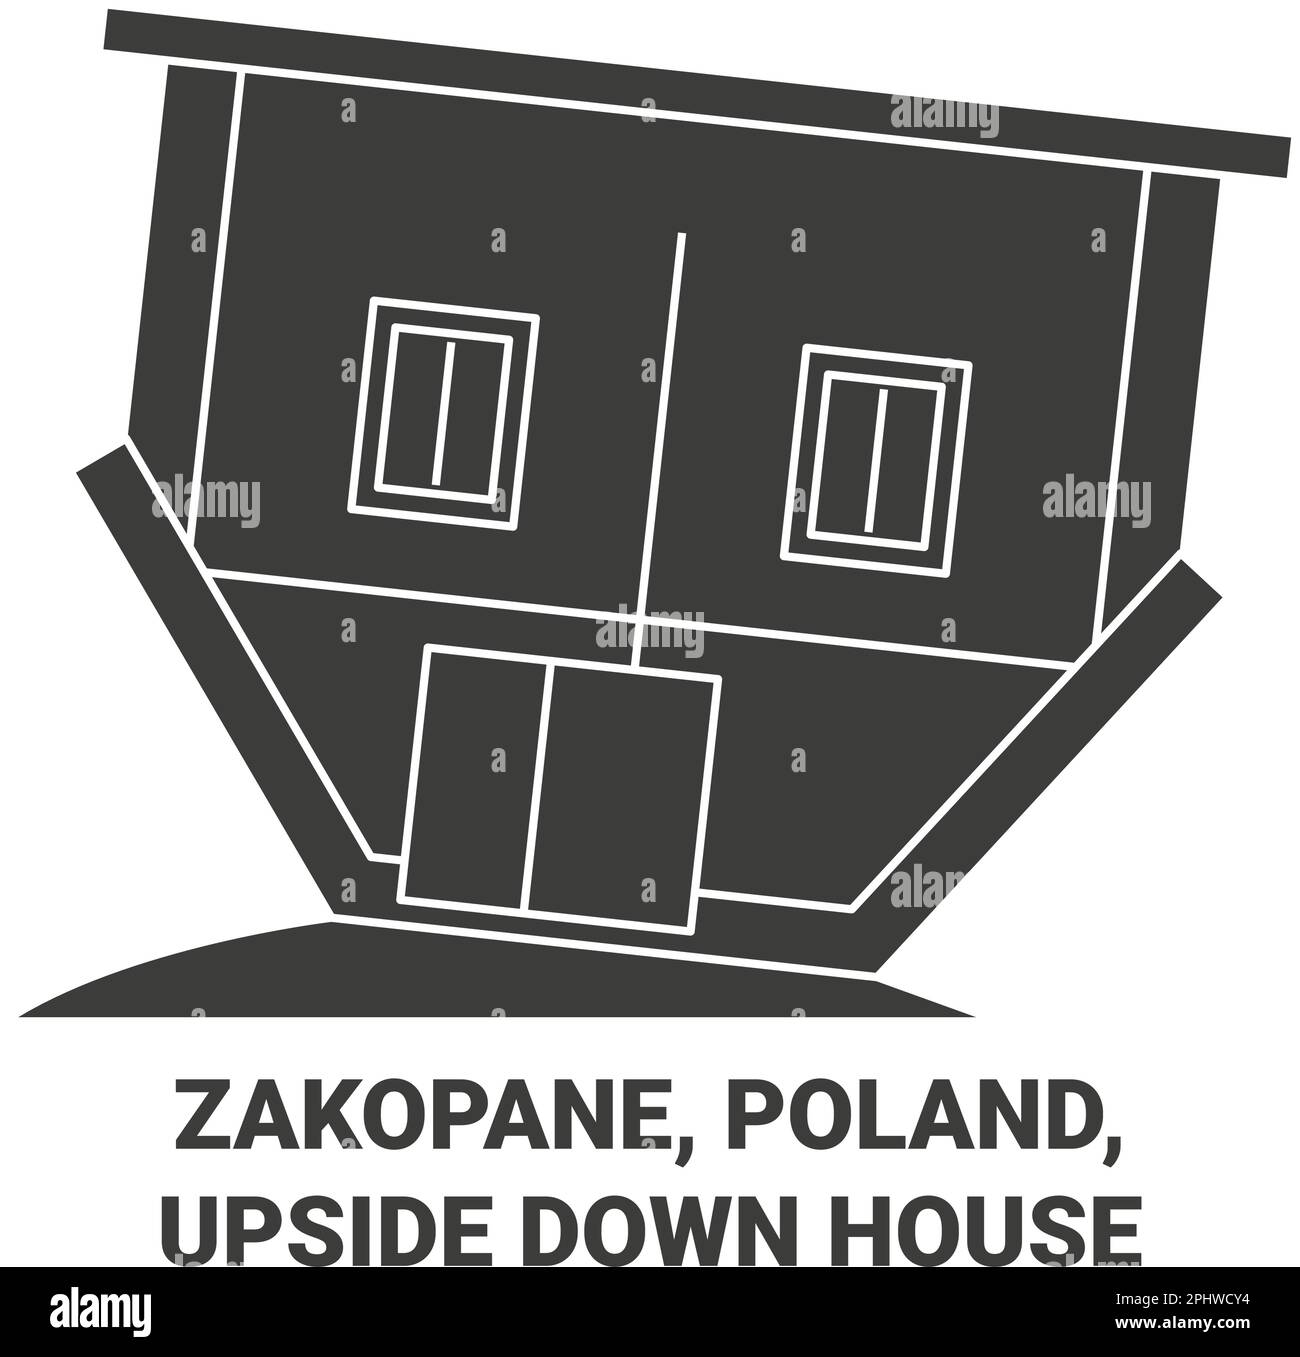 Polen, Zakopane, Upside-Down-House-Reise-Vektordarstellung Stock Vektor